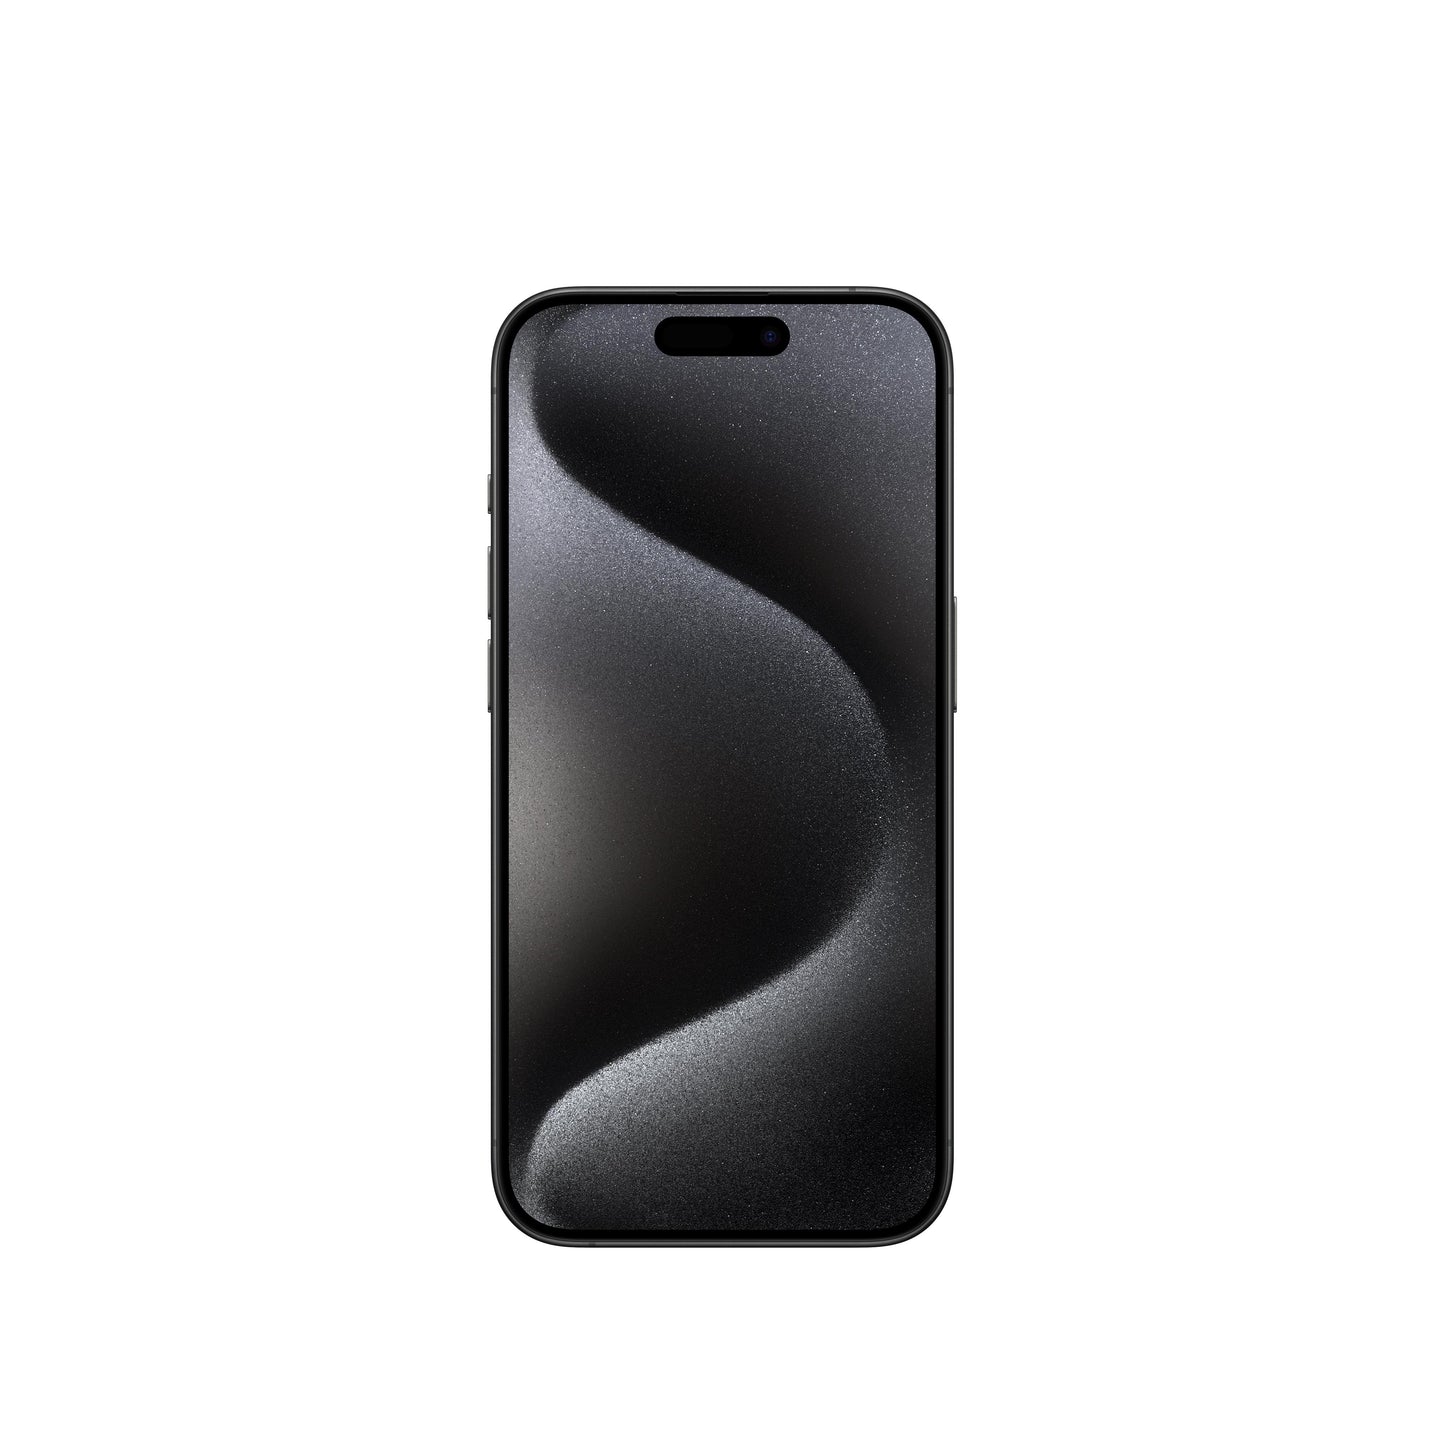 iPhone 15 Pro in Black Titanium, 256GB Storage. EMI available |Get best offers for iphone 15 pro [variant] Black Titanium 256GB.